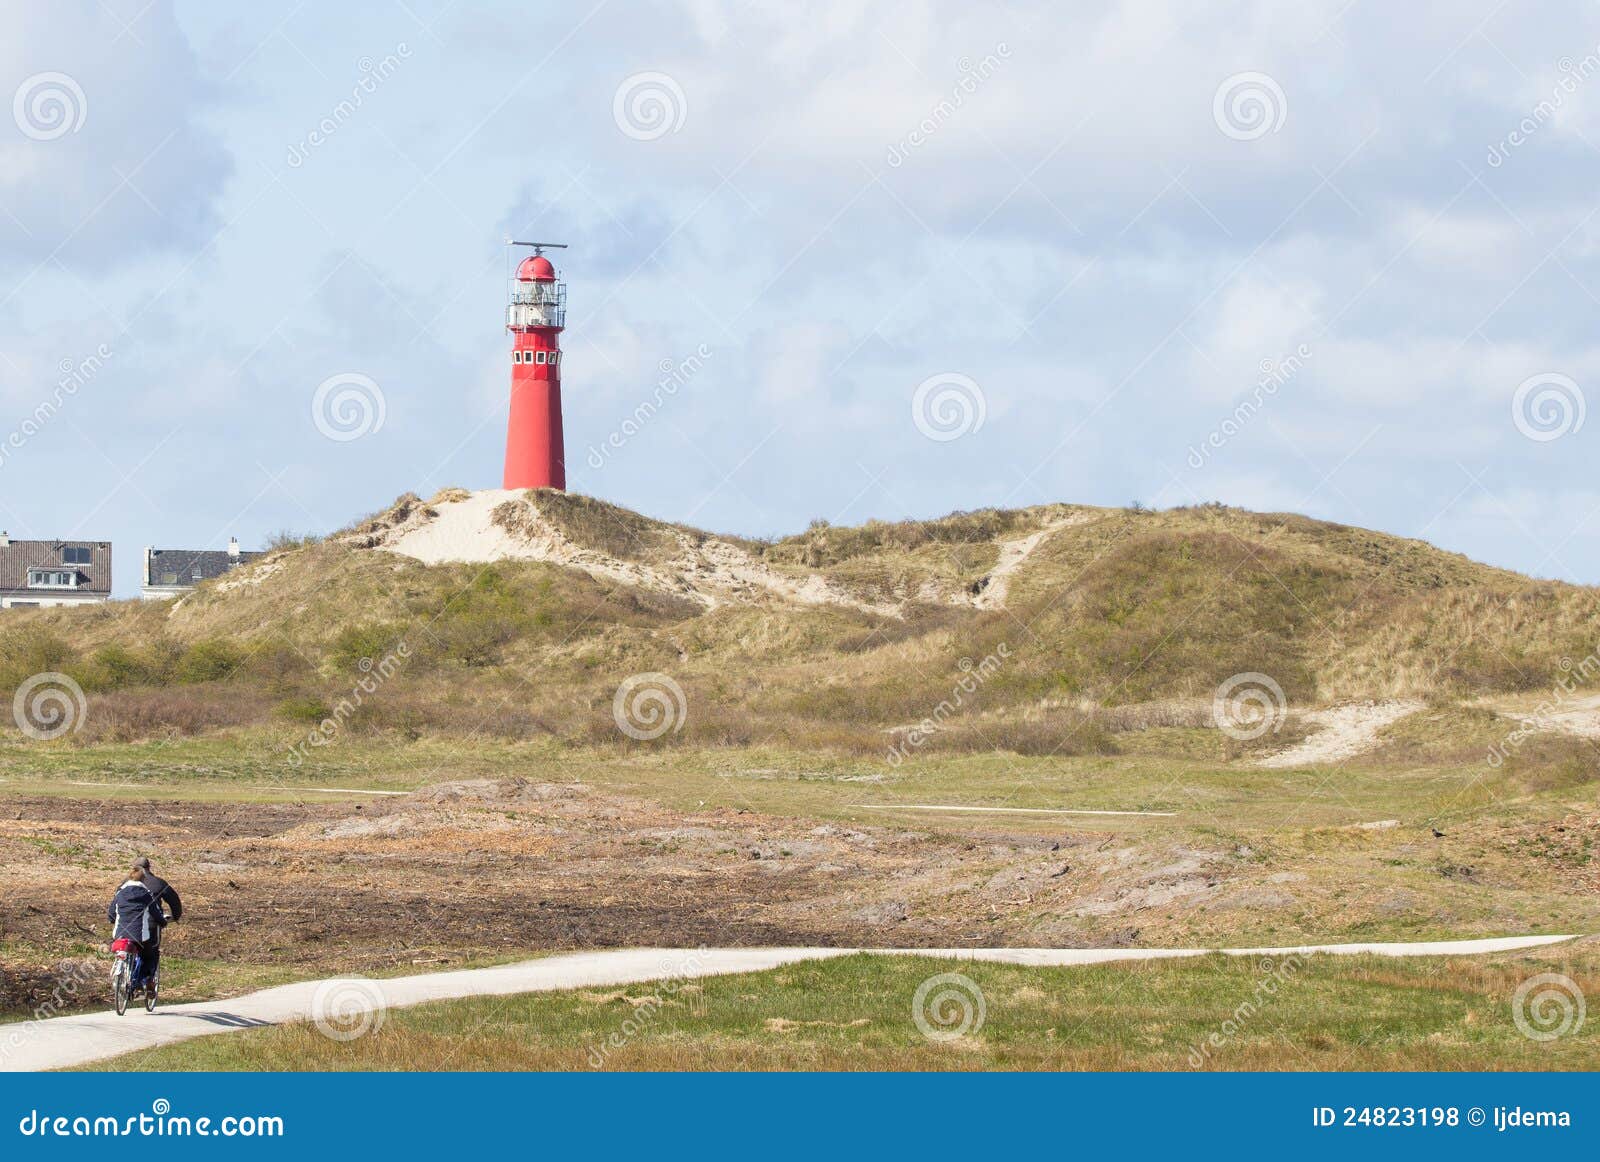 dutch isle schiermonnikoog landscape